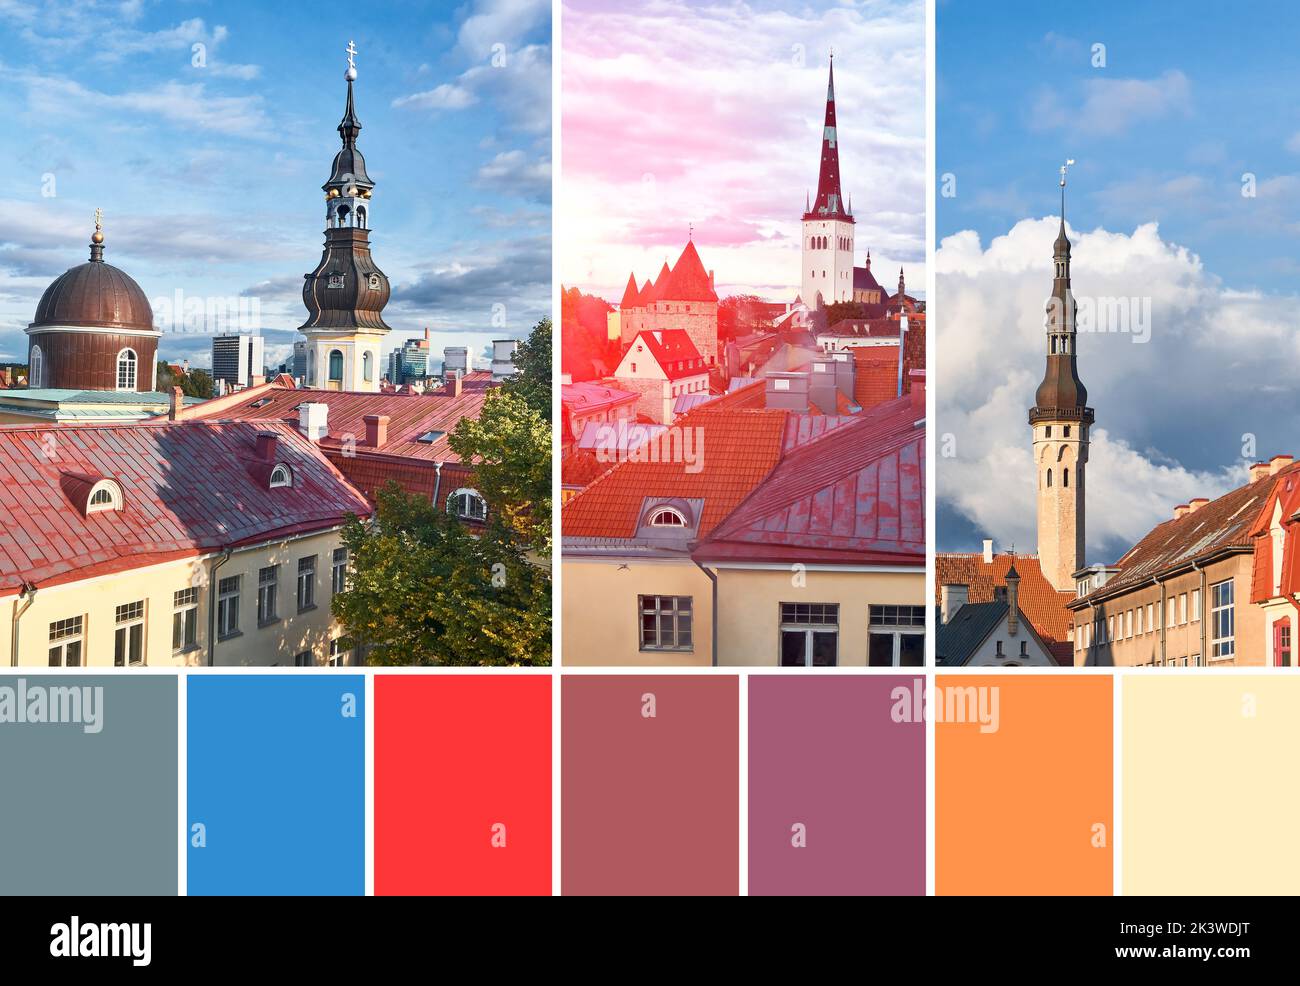 Palette de couleurs assorties d'images de Tallinn, Estonie. Hôtel de ville historique, tours murales, façades historiques, toits de bâtiments médiévaux anciens. Banque D'Images